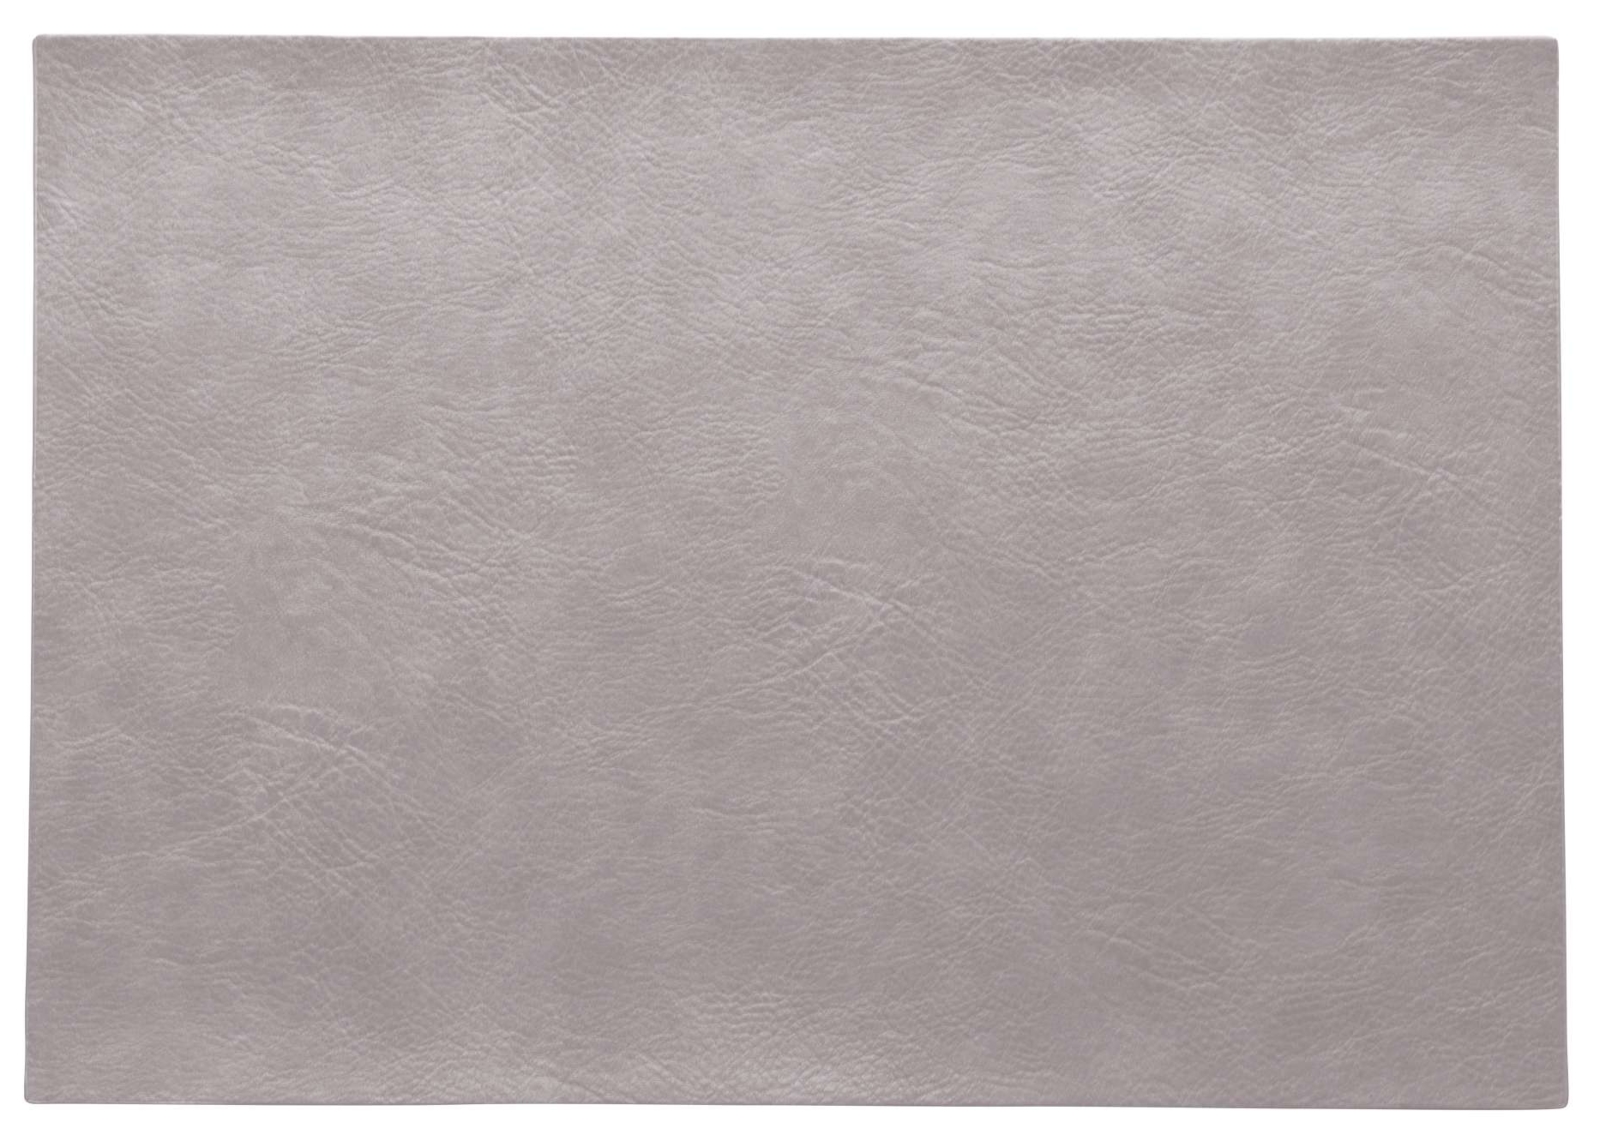 ASA Tischset silver cloud 46 x 33 cm